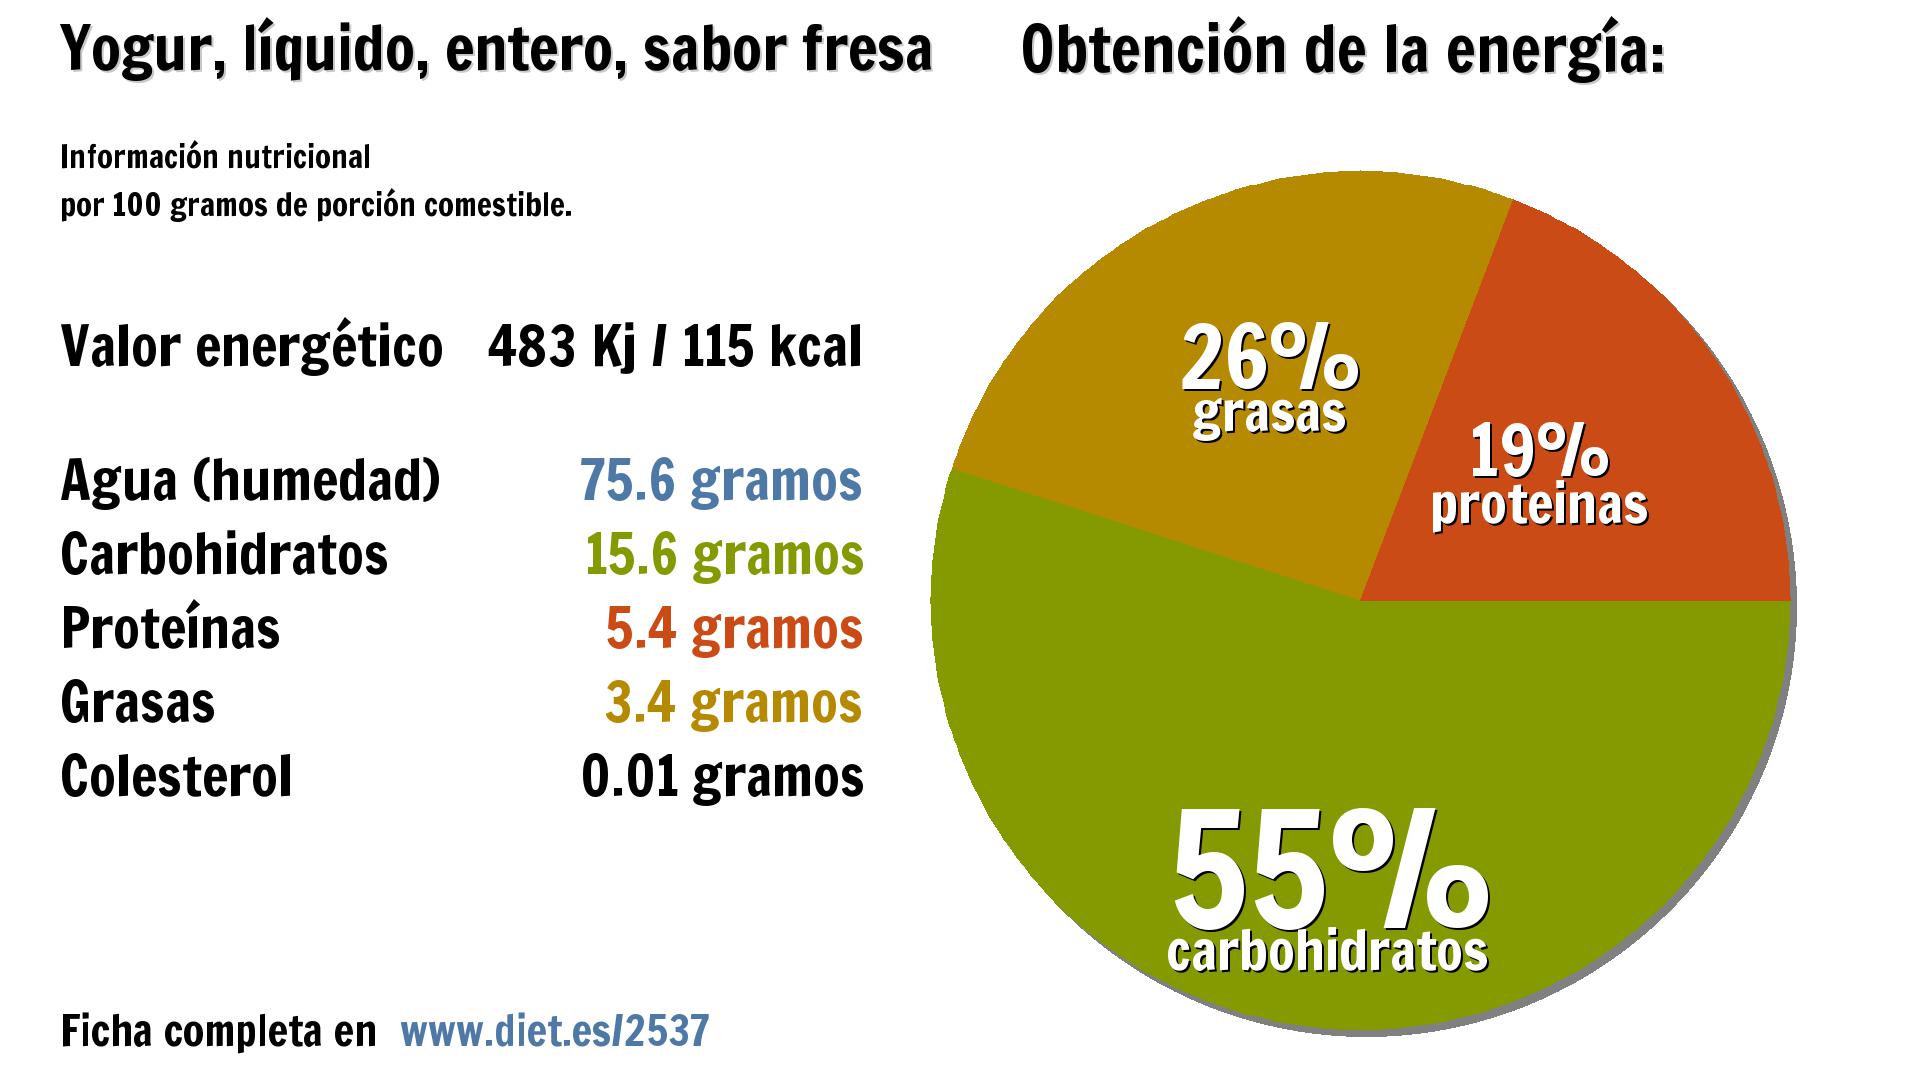 Yogur, líquido, entero, sabor fresa: energía 483 Kj, agua 76 g., carbohidratos 16 g., proteínas 5 g. y grasas 3 g.